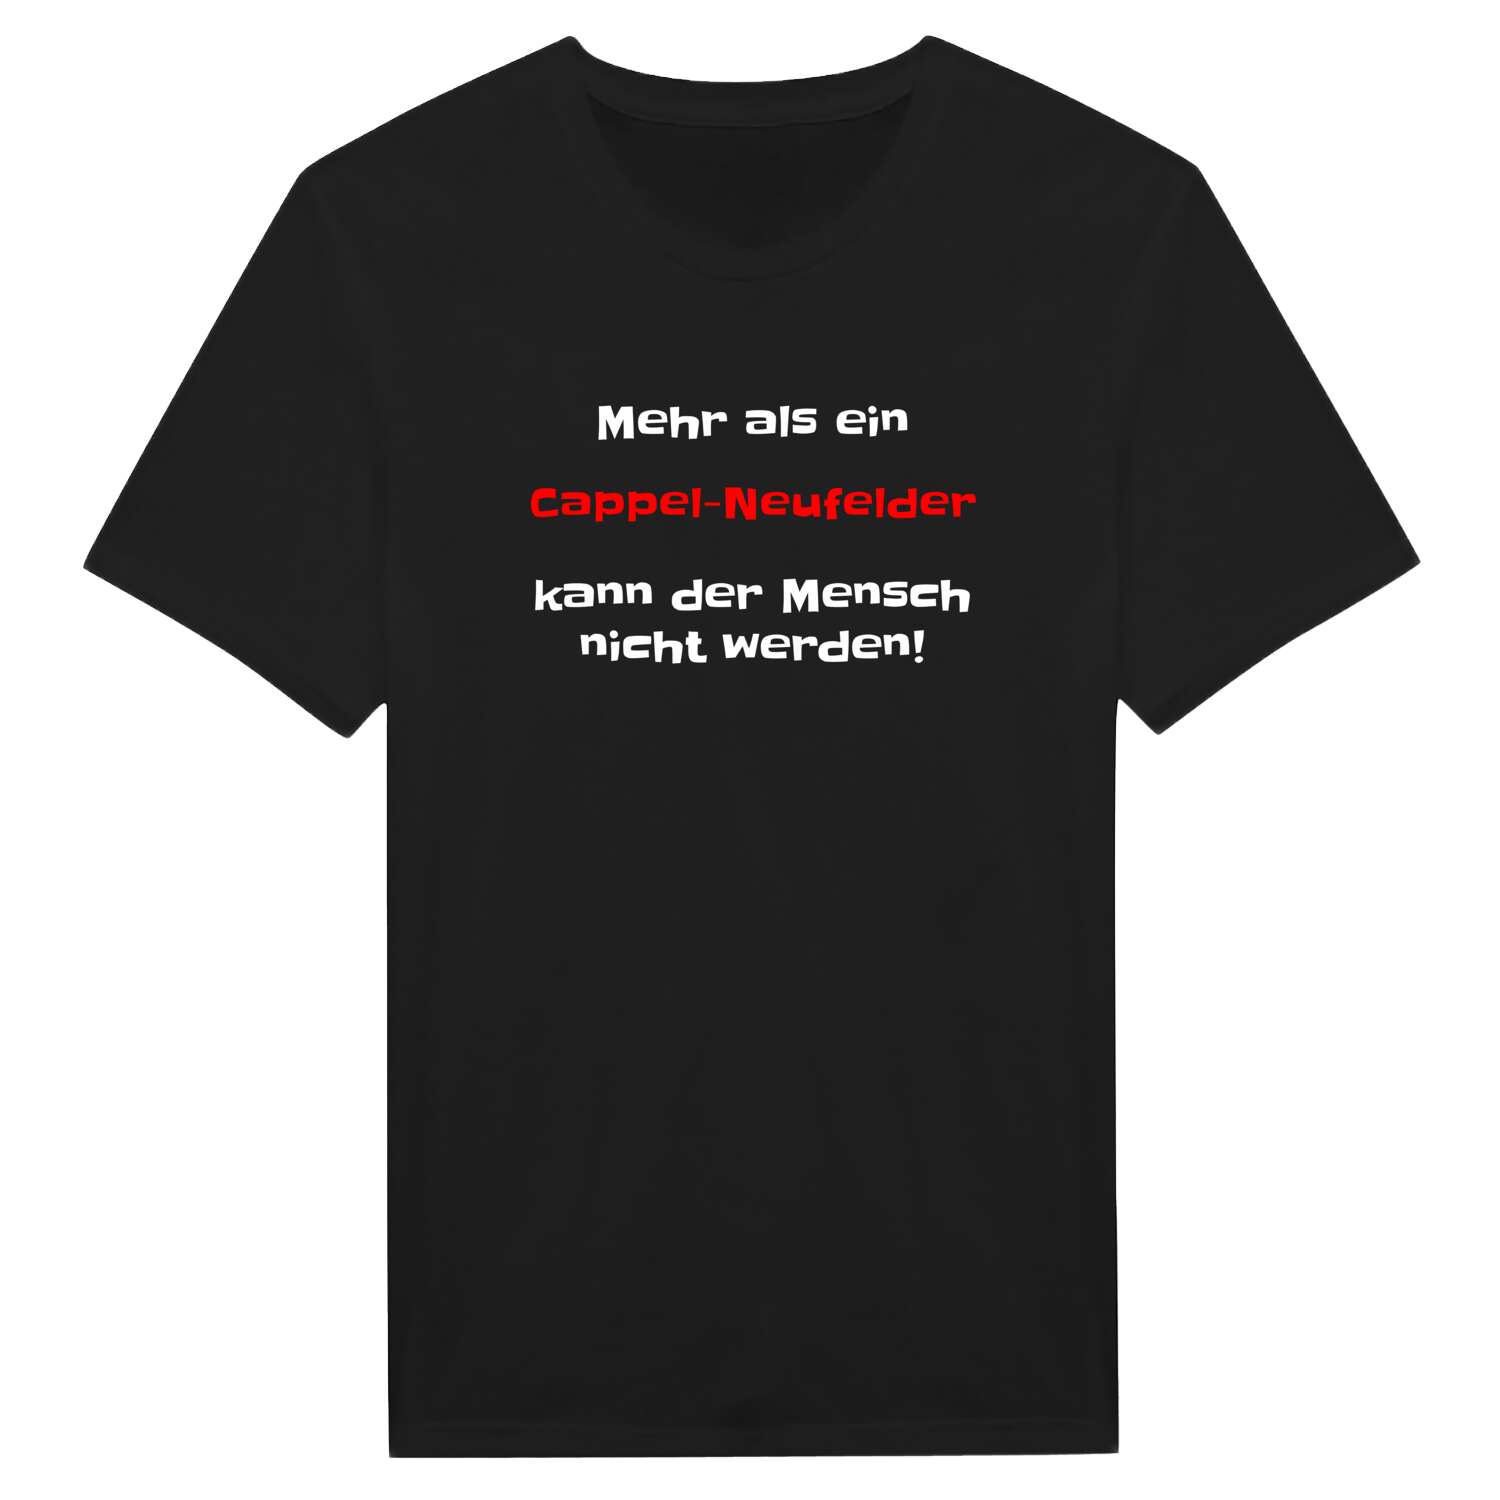 Cappel-Neufeld T-Shirt »Mehr als ein«